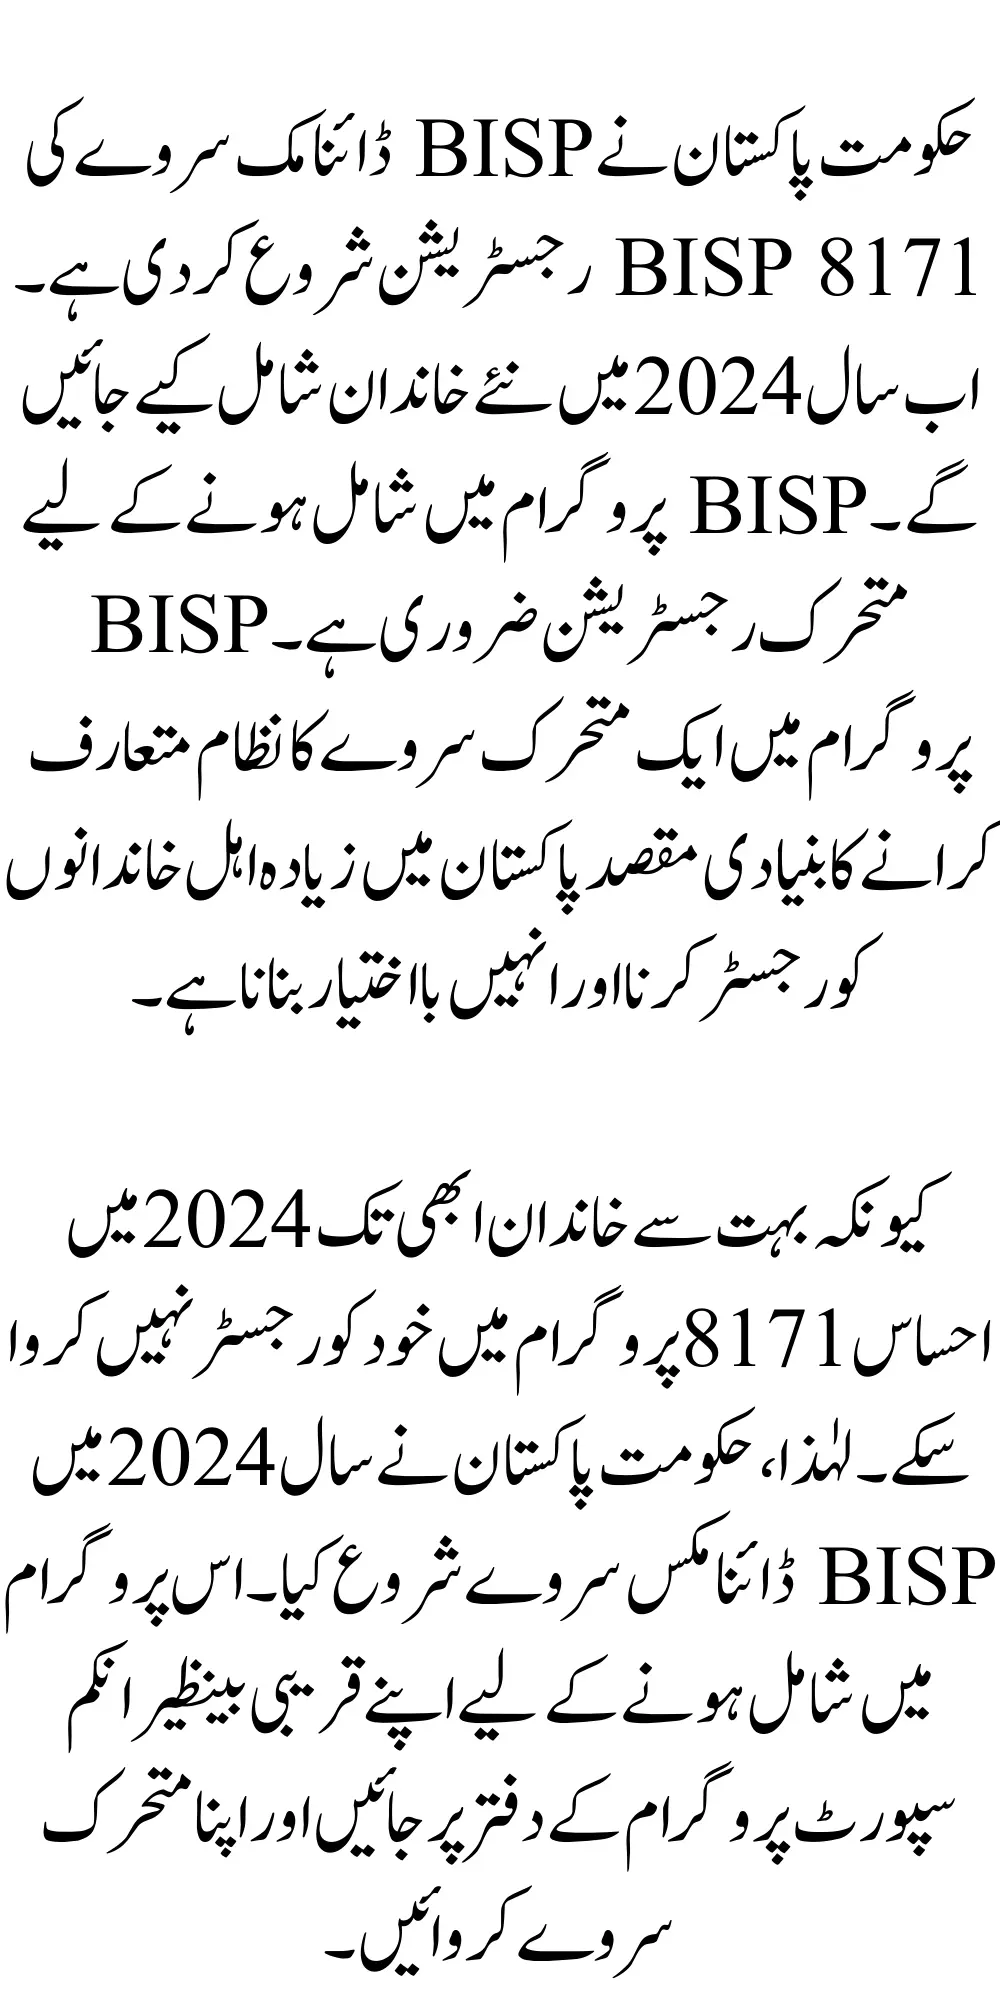 BISP 8171 Registration By Survey Method